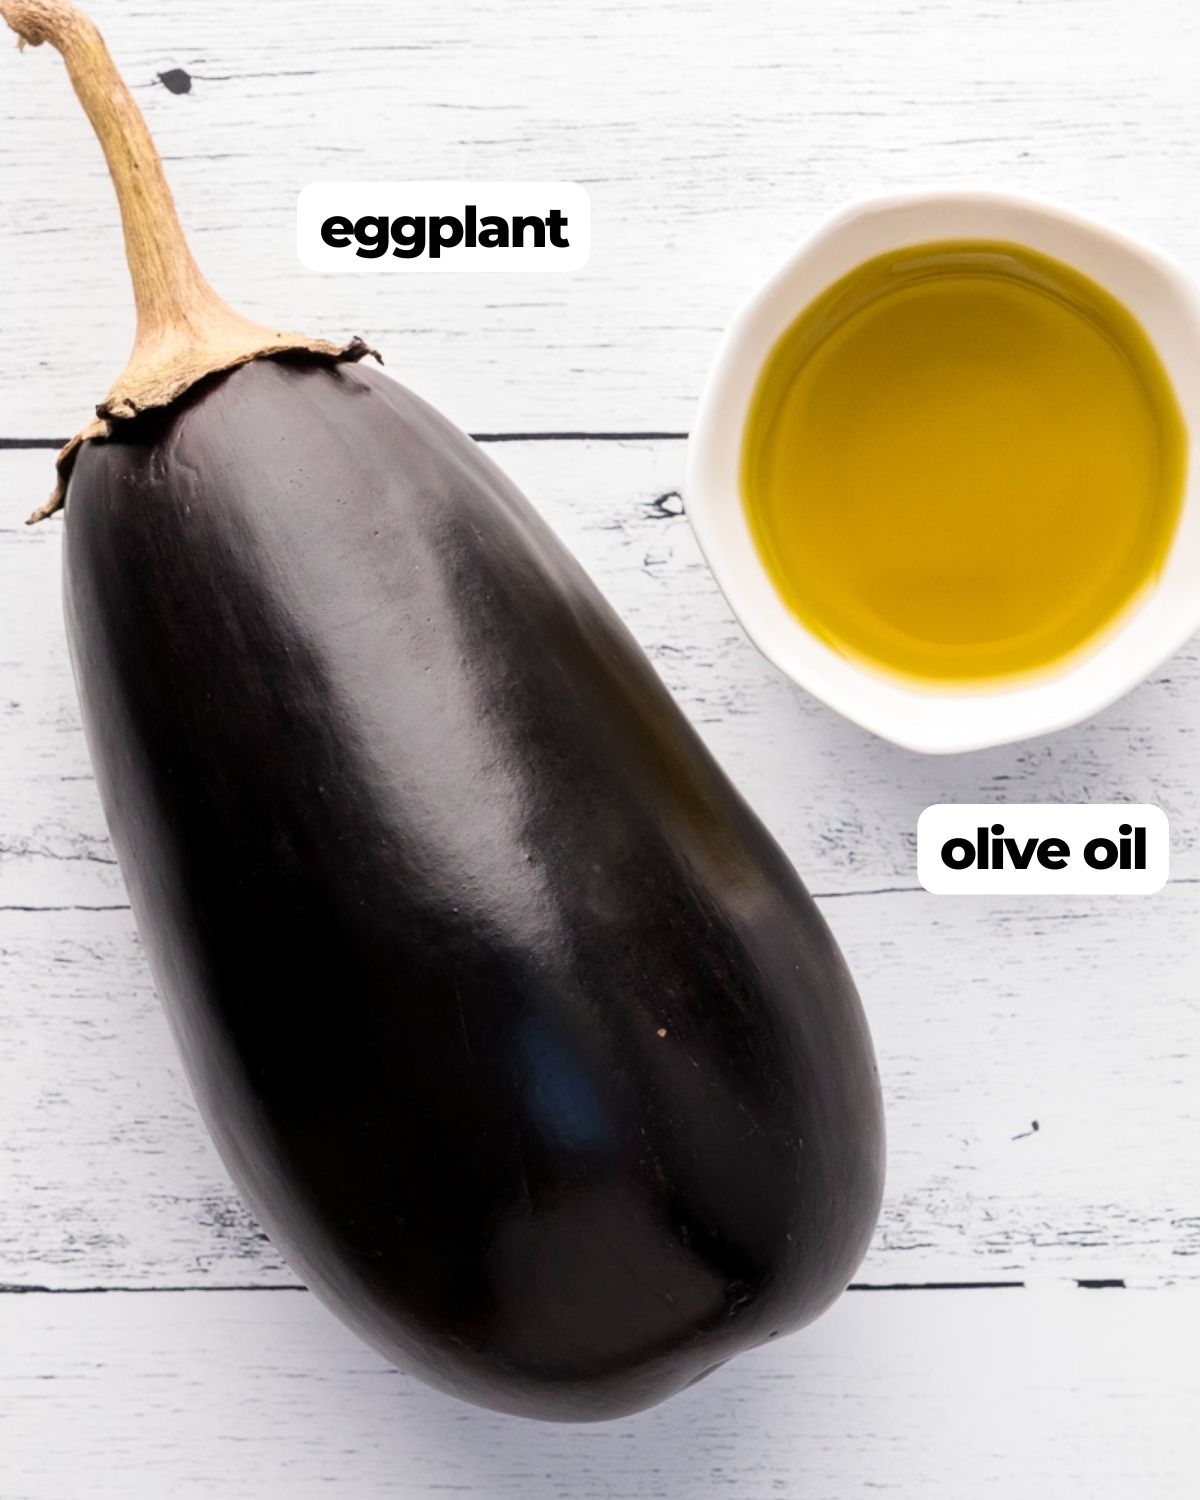 Air fryer eggplant ingredients